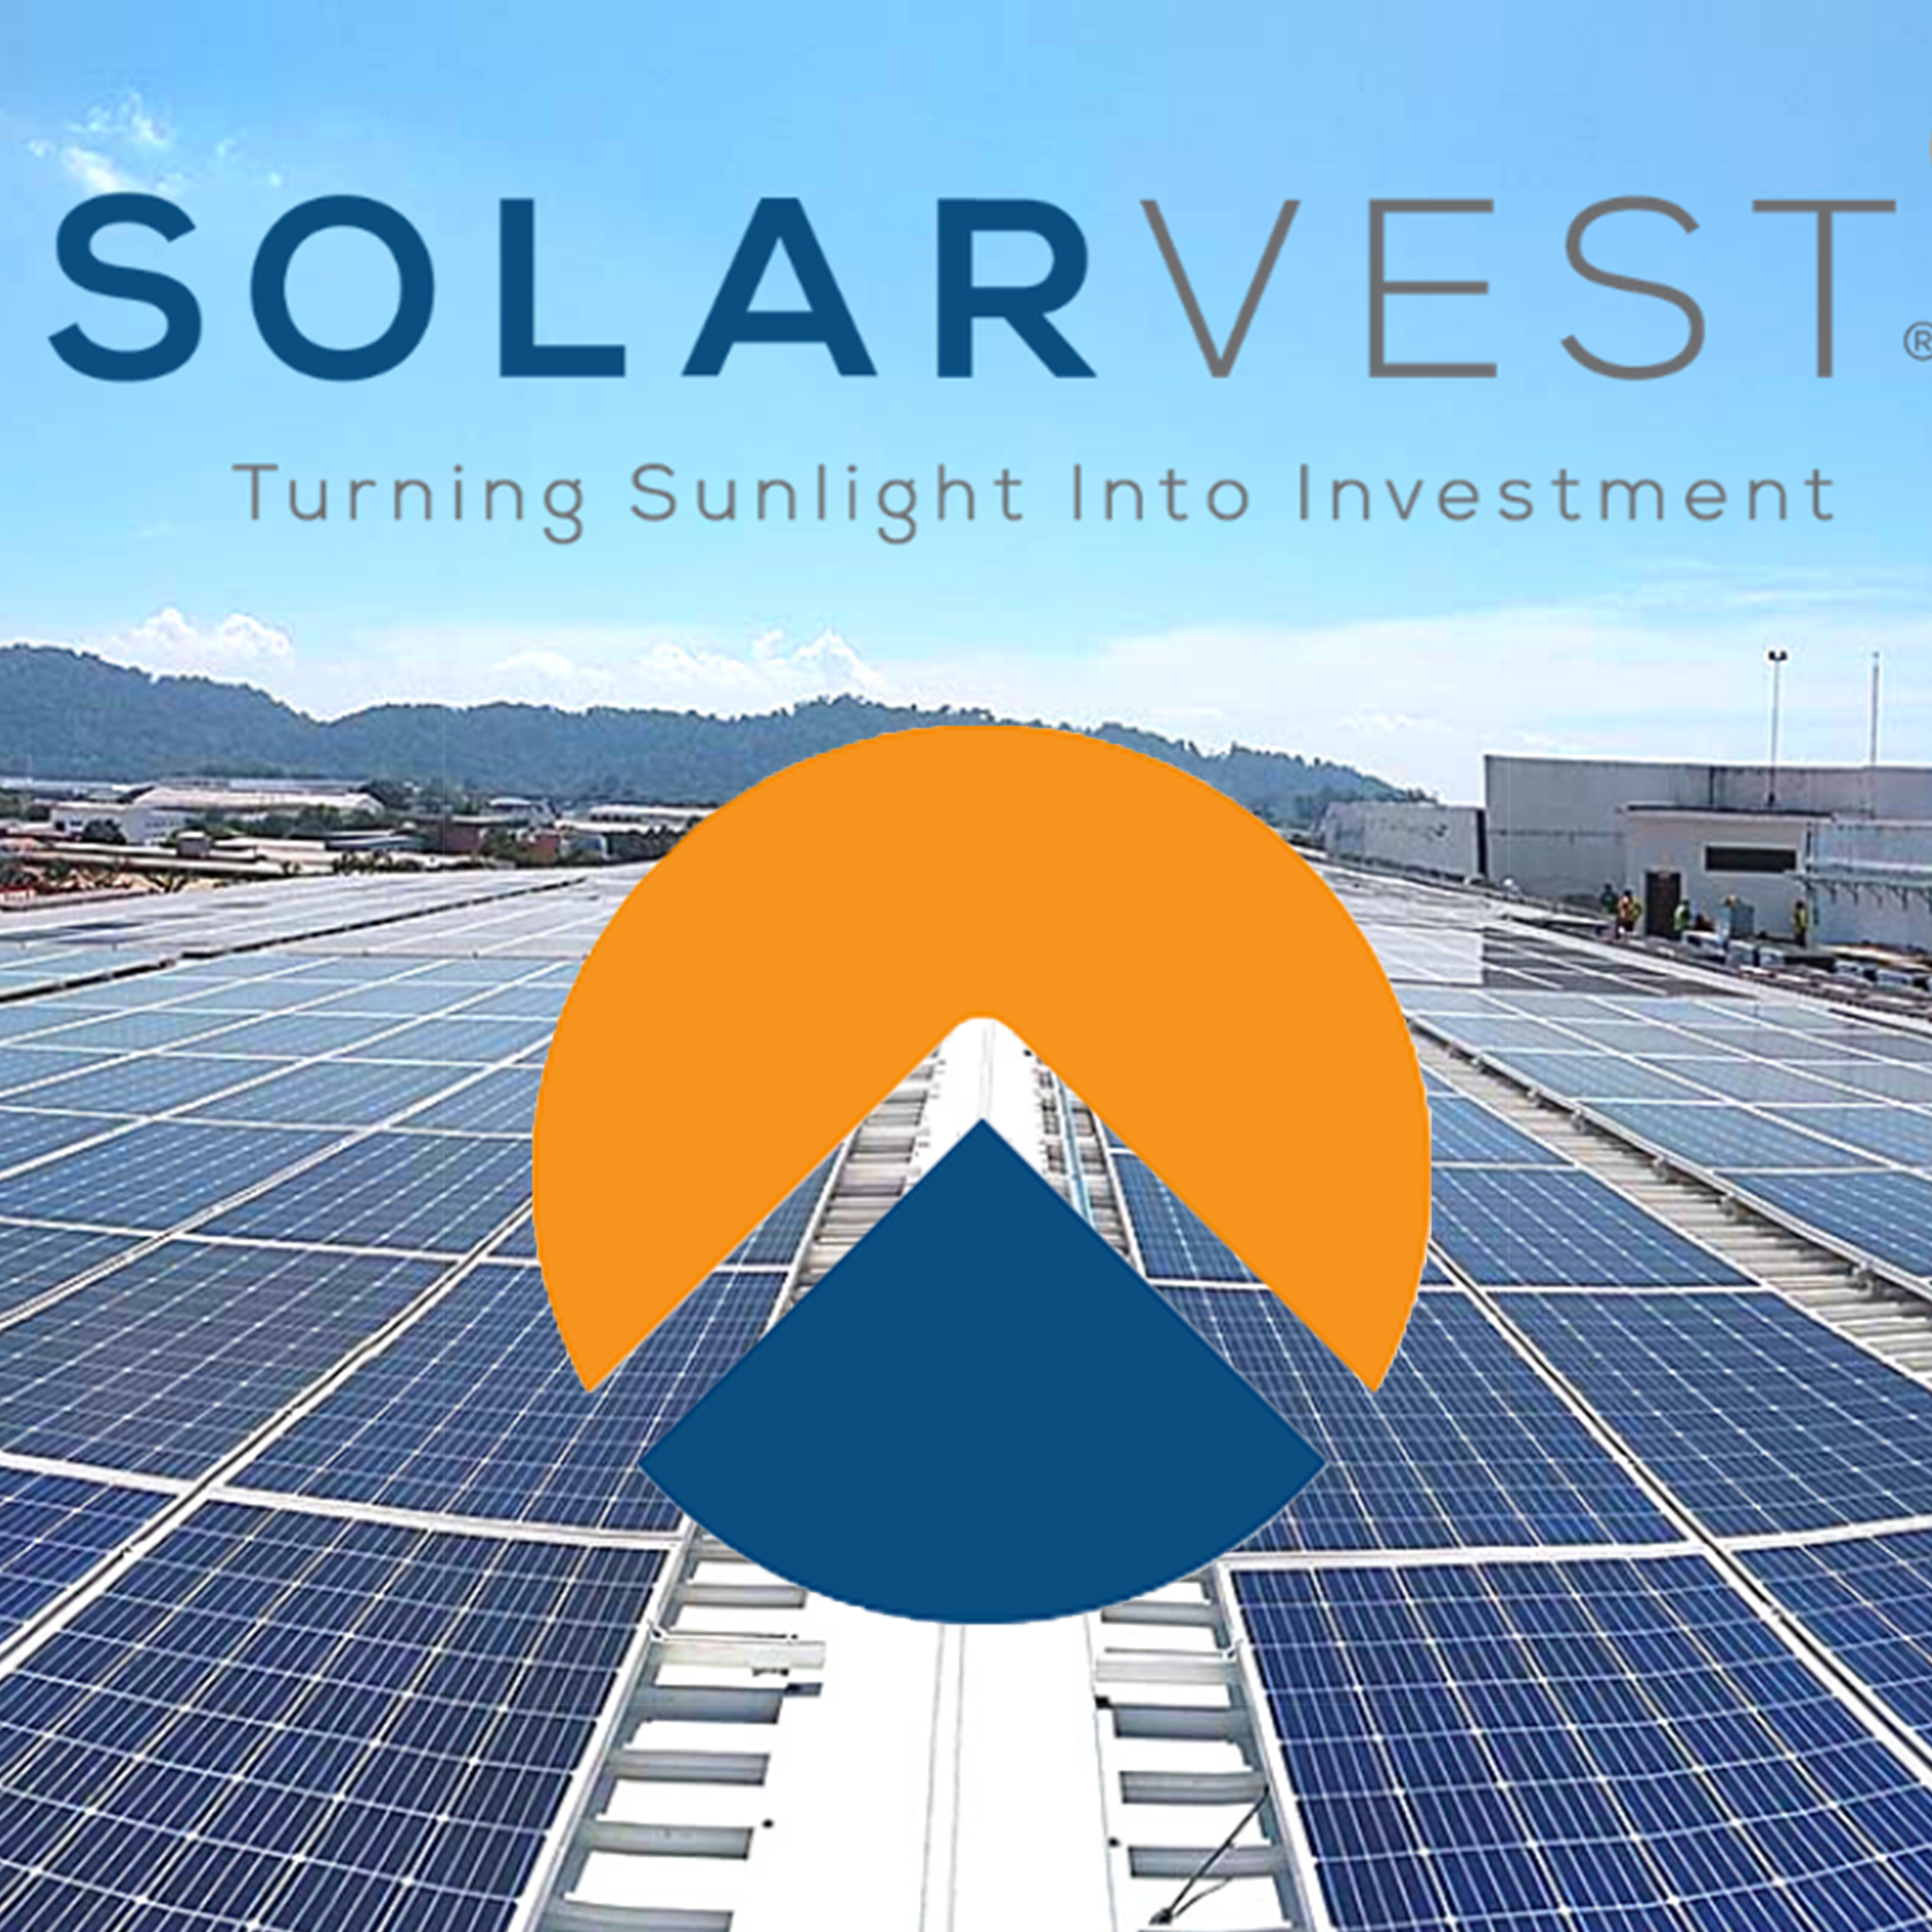 大马四季如夏，Solarvest凭借太阳能一枝独秀！| 烤问张俊雄